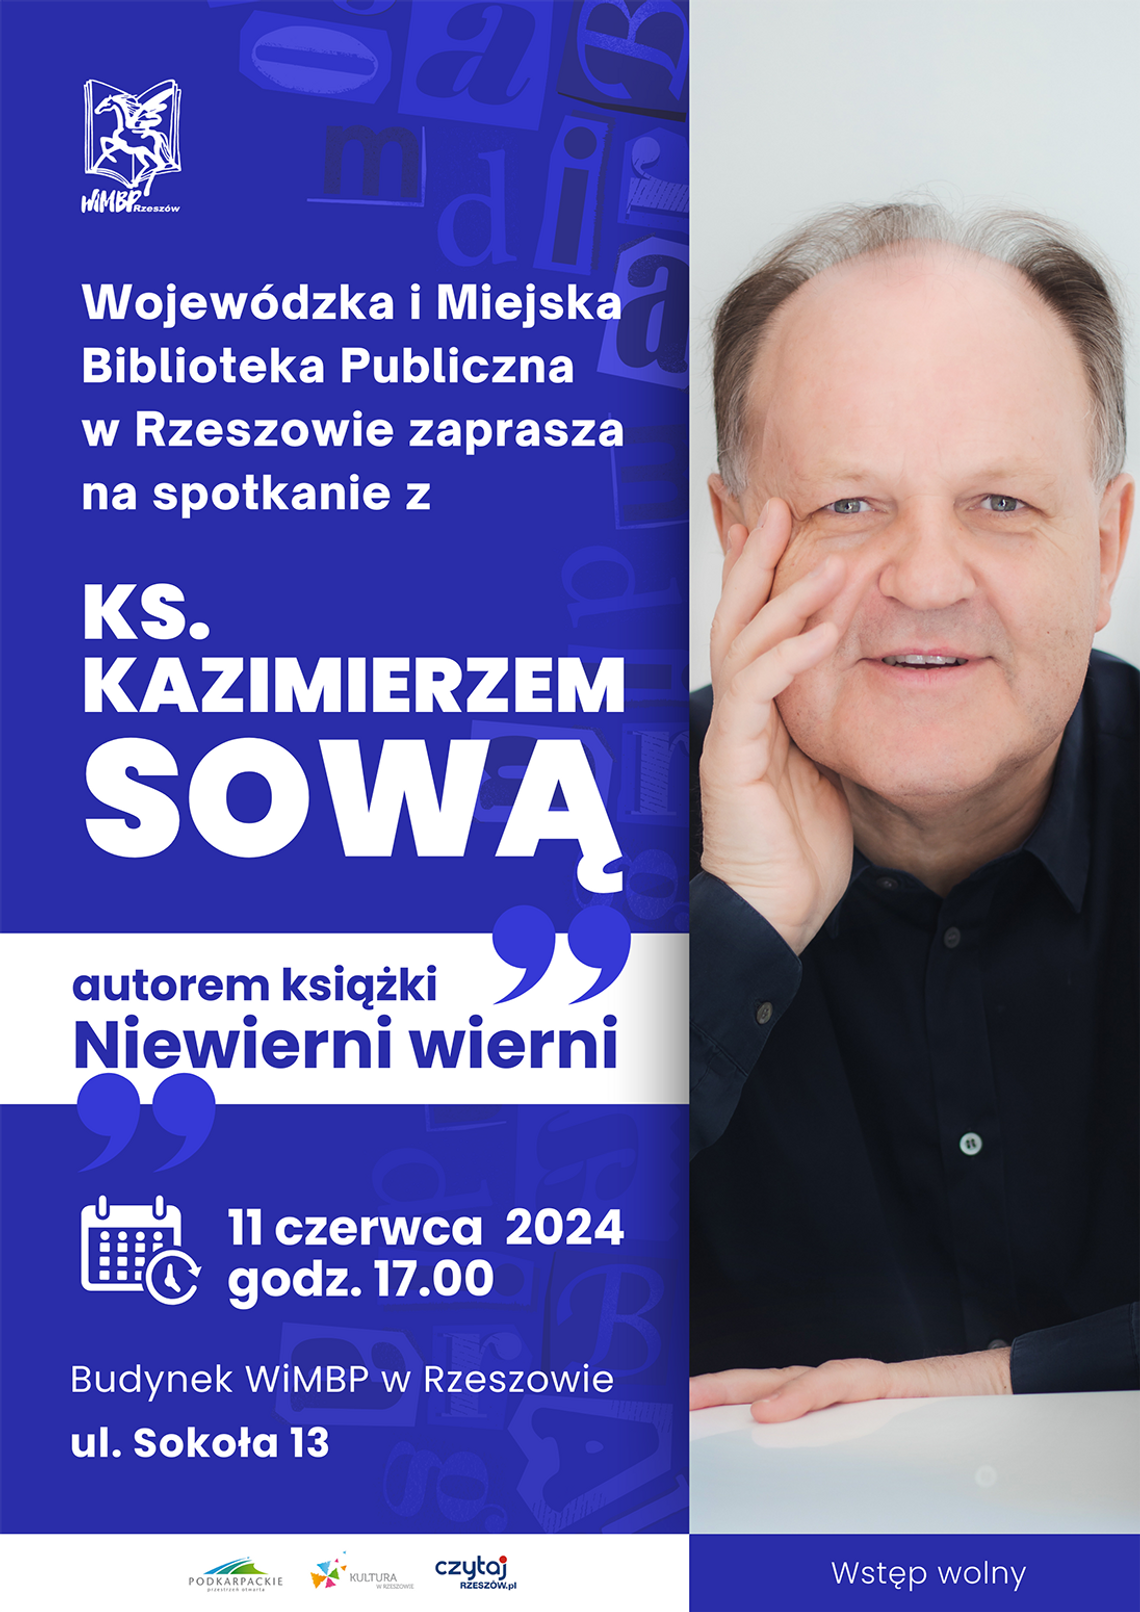 WiMBP: Spotkanie z ks. Kazimierzem Sową